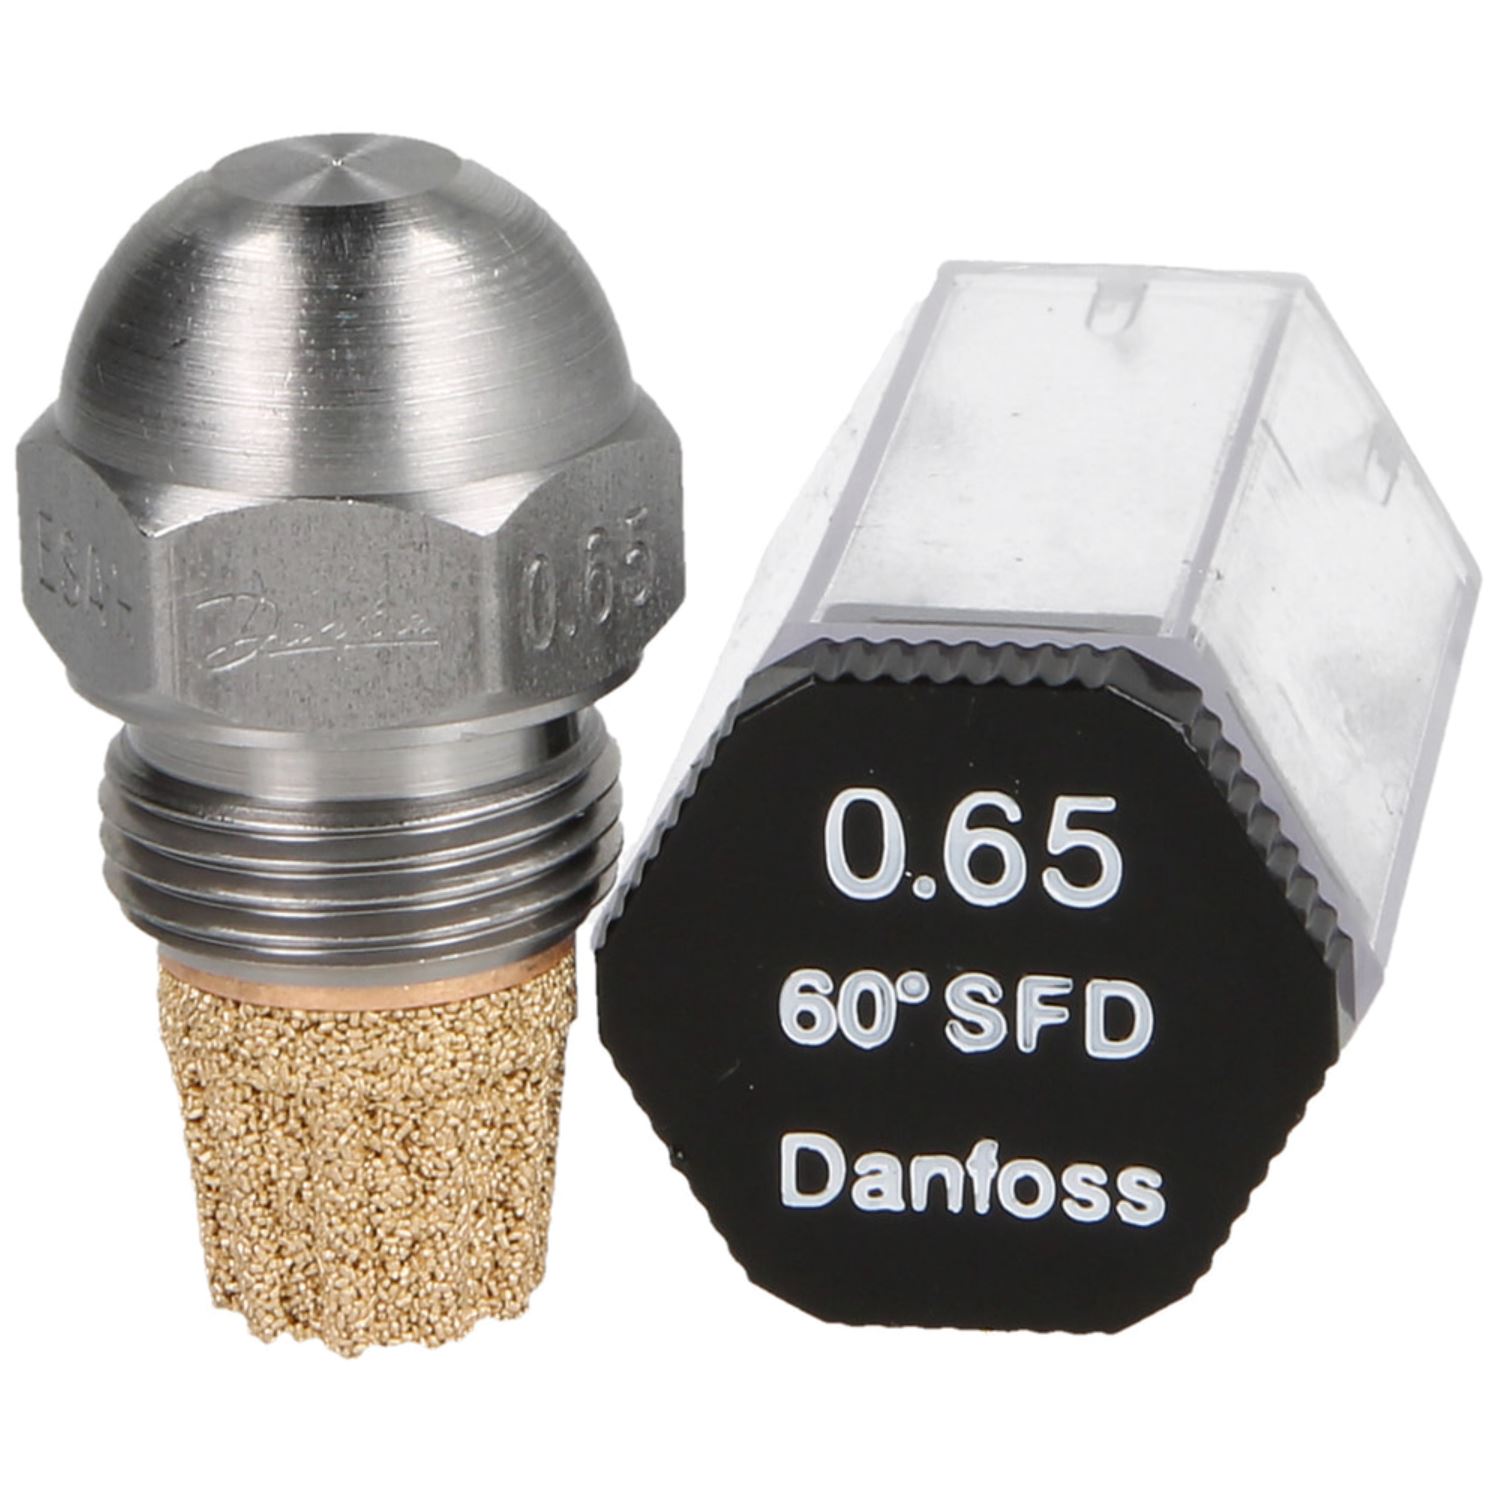 Danfoss-Öldüse 0,65 60°SF-D